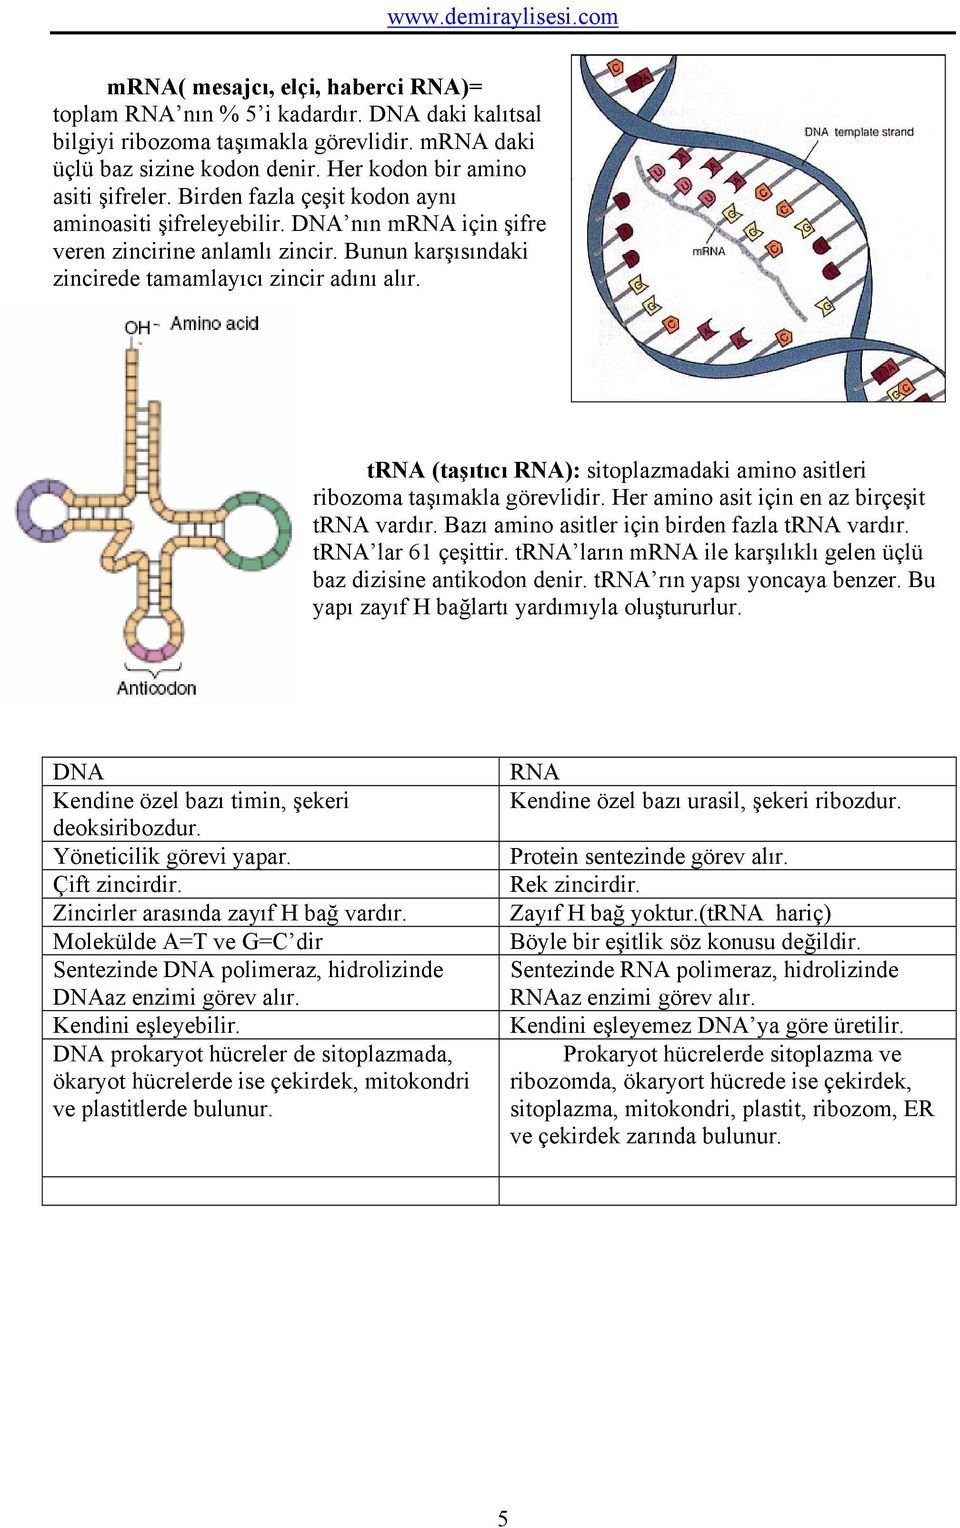 trna (taşıtıcı RNA): sitoplazmadaki amino asitleri ribozoma taşımakla görevlidir. Her amino asit için en az birçeşit trna vardır. Bazı amino asitler için birden fazla trna vardır.